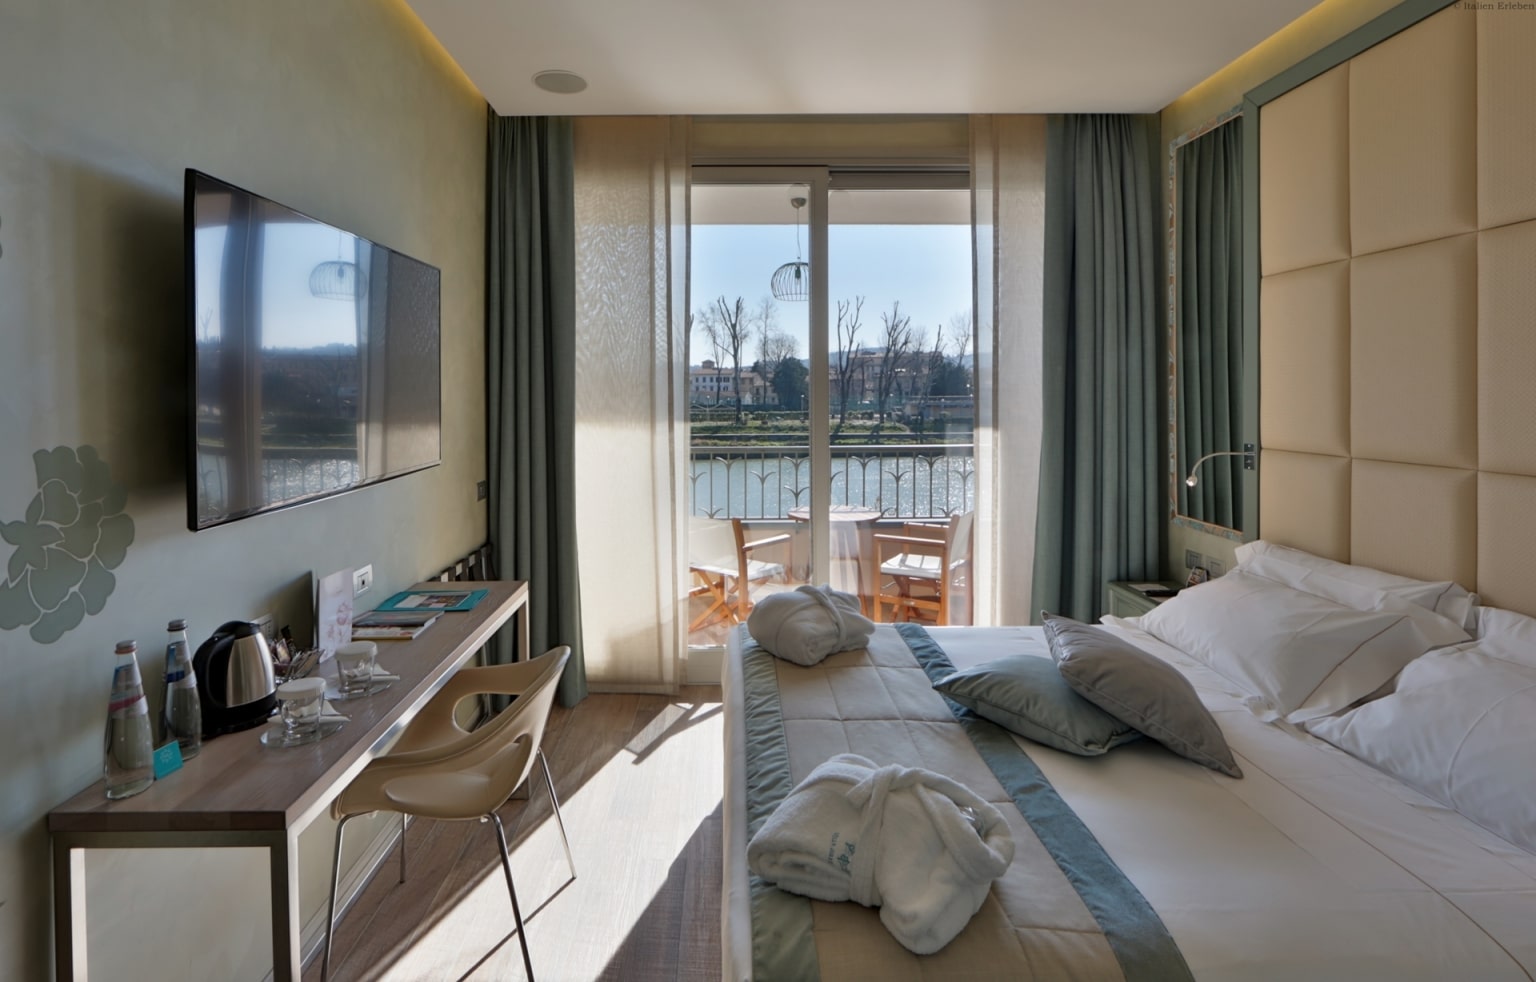 Toskana Florenz Hotel Ville sull'Arno direkt Arno Fluss nahe Altstadt historisch Stadtrand gut erreichbar Zimmer Balkon Blick